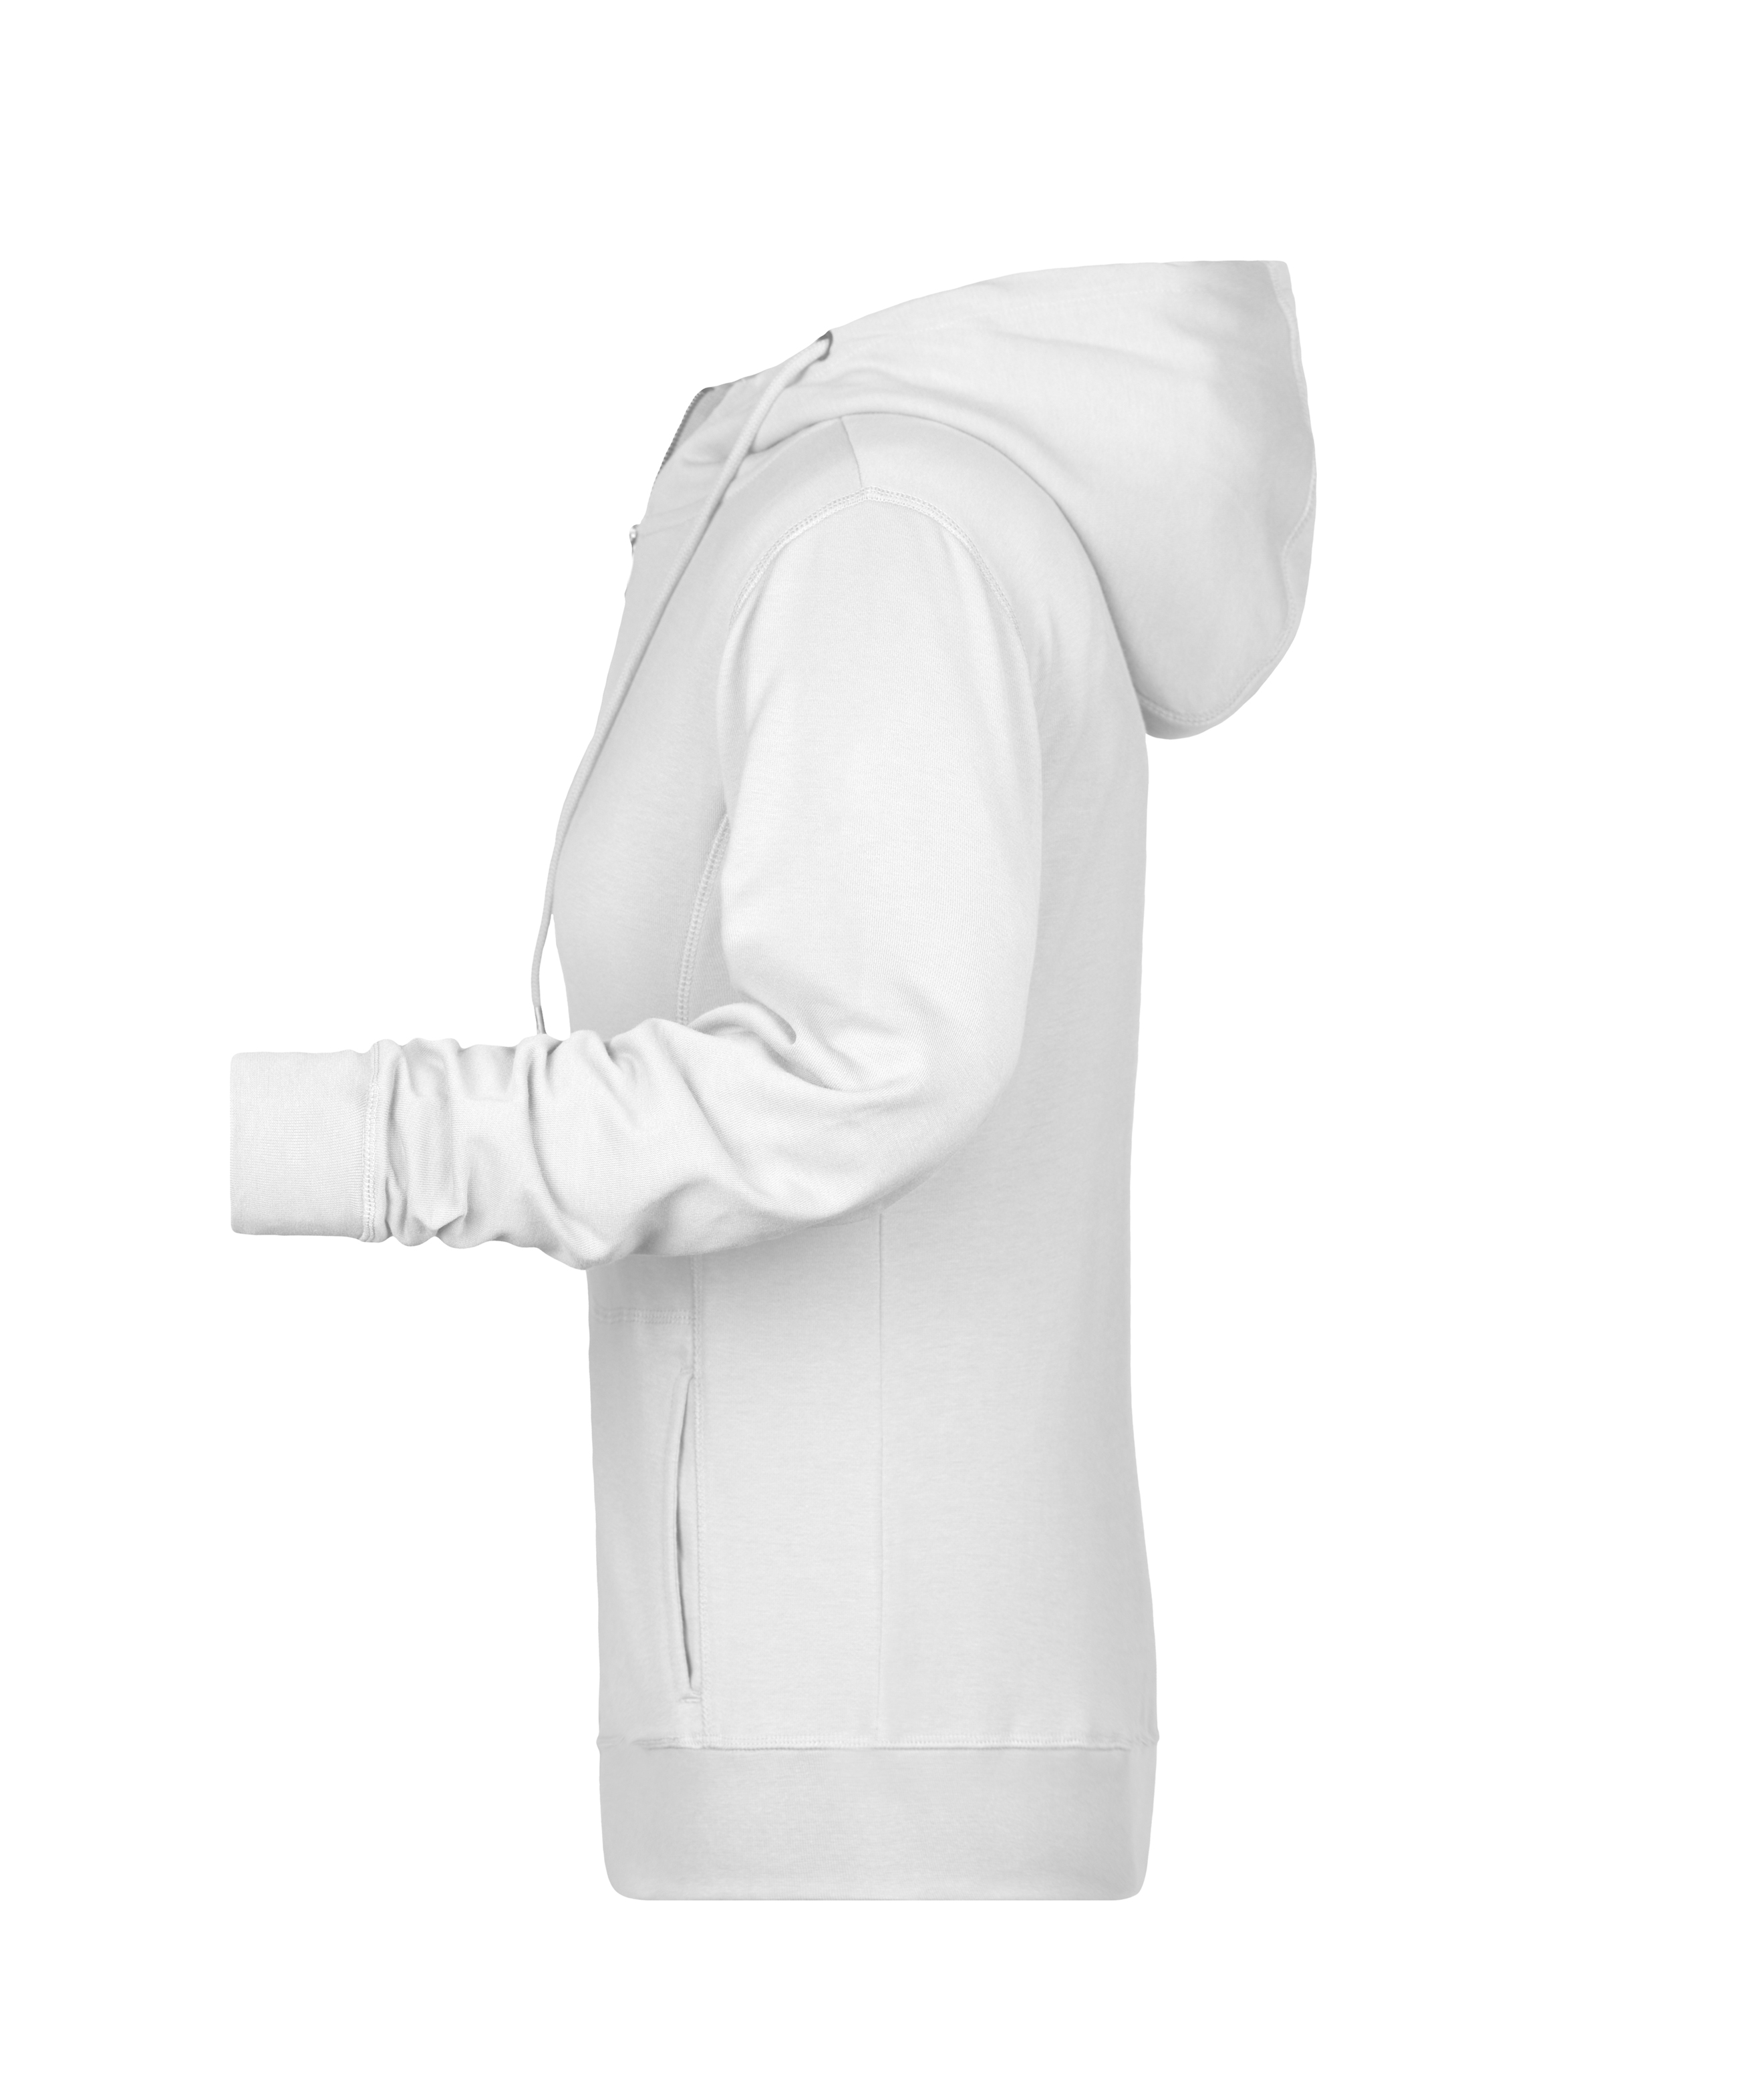 Ladies' Zip Hoody 8025 Sweat-Jacke mit Kapuze und Reißverschluss